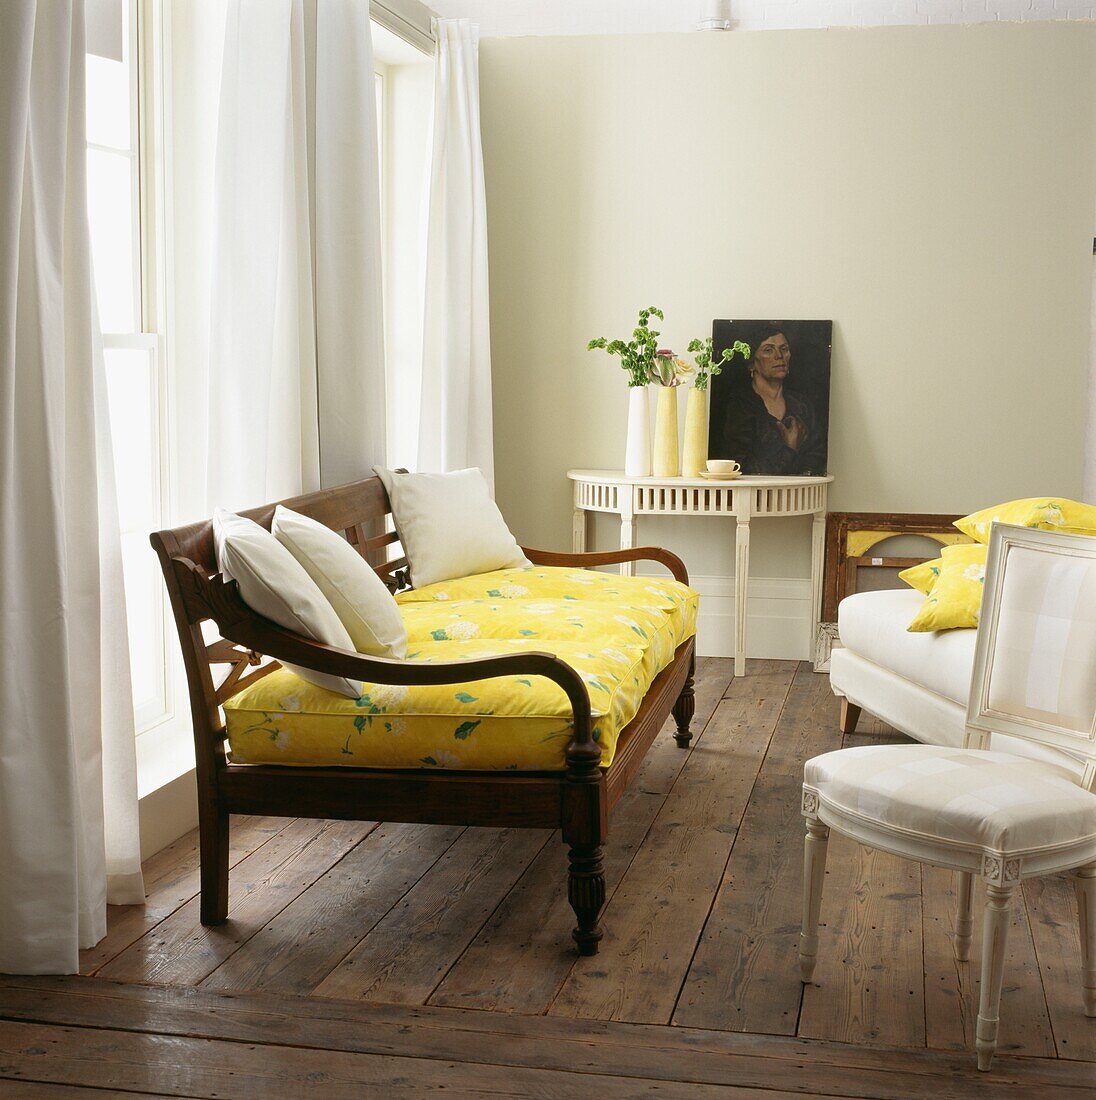 Gelbes gepolstertes Tagesbett am Fenster eines Zimmers mit freiliegenden Dielen und Porträt auf Konsolentisch